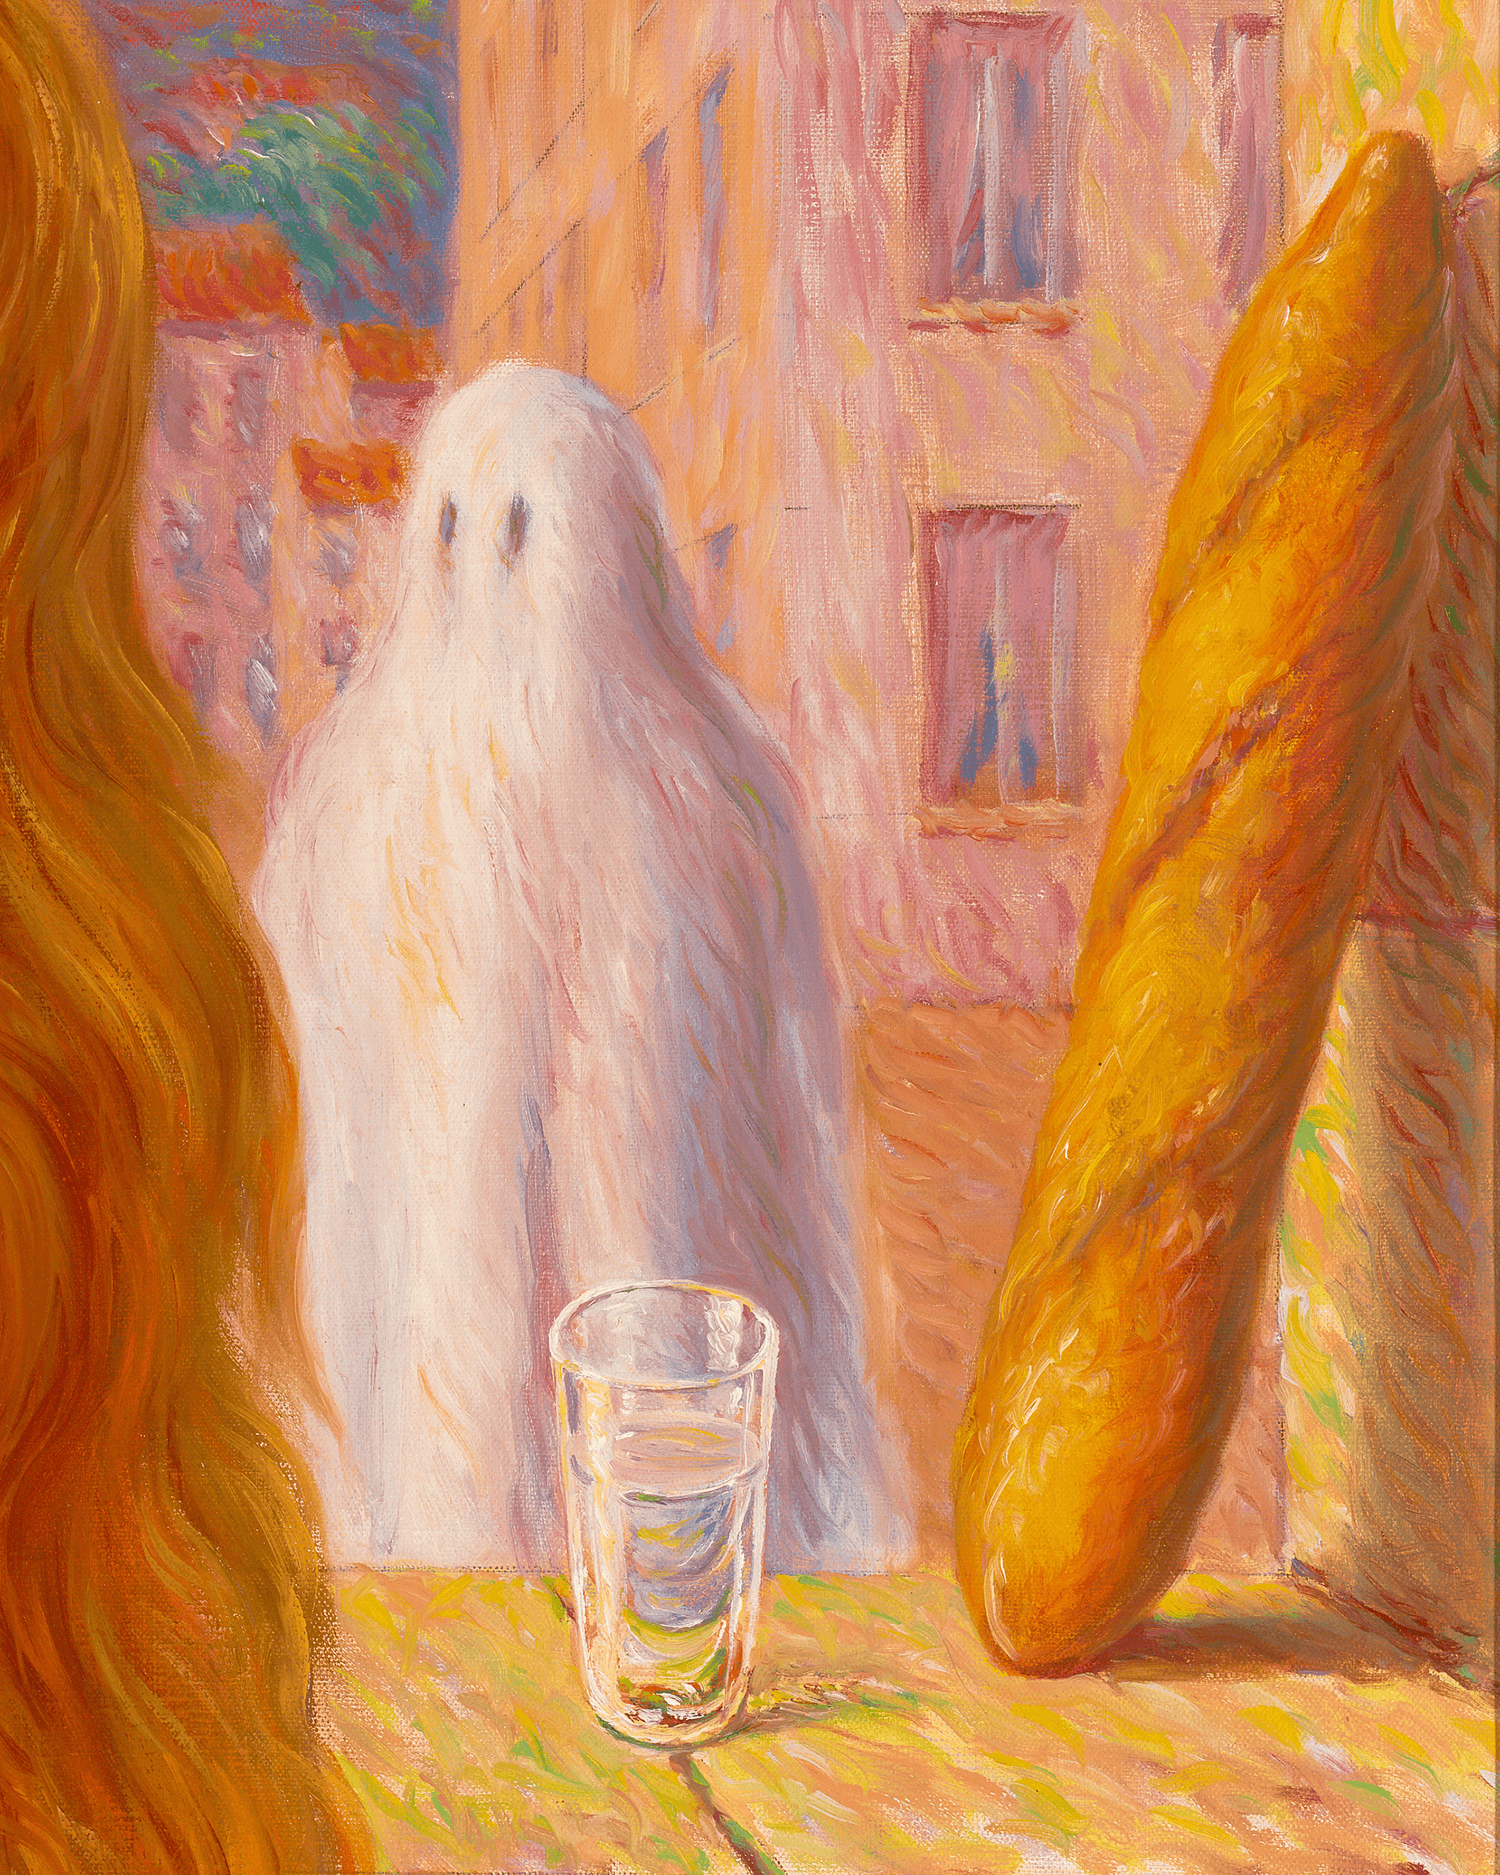 Le carnaval du sage by René Magritte